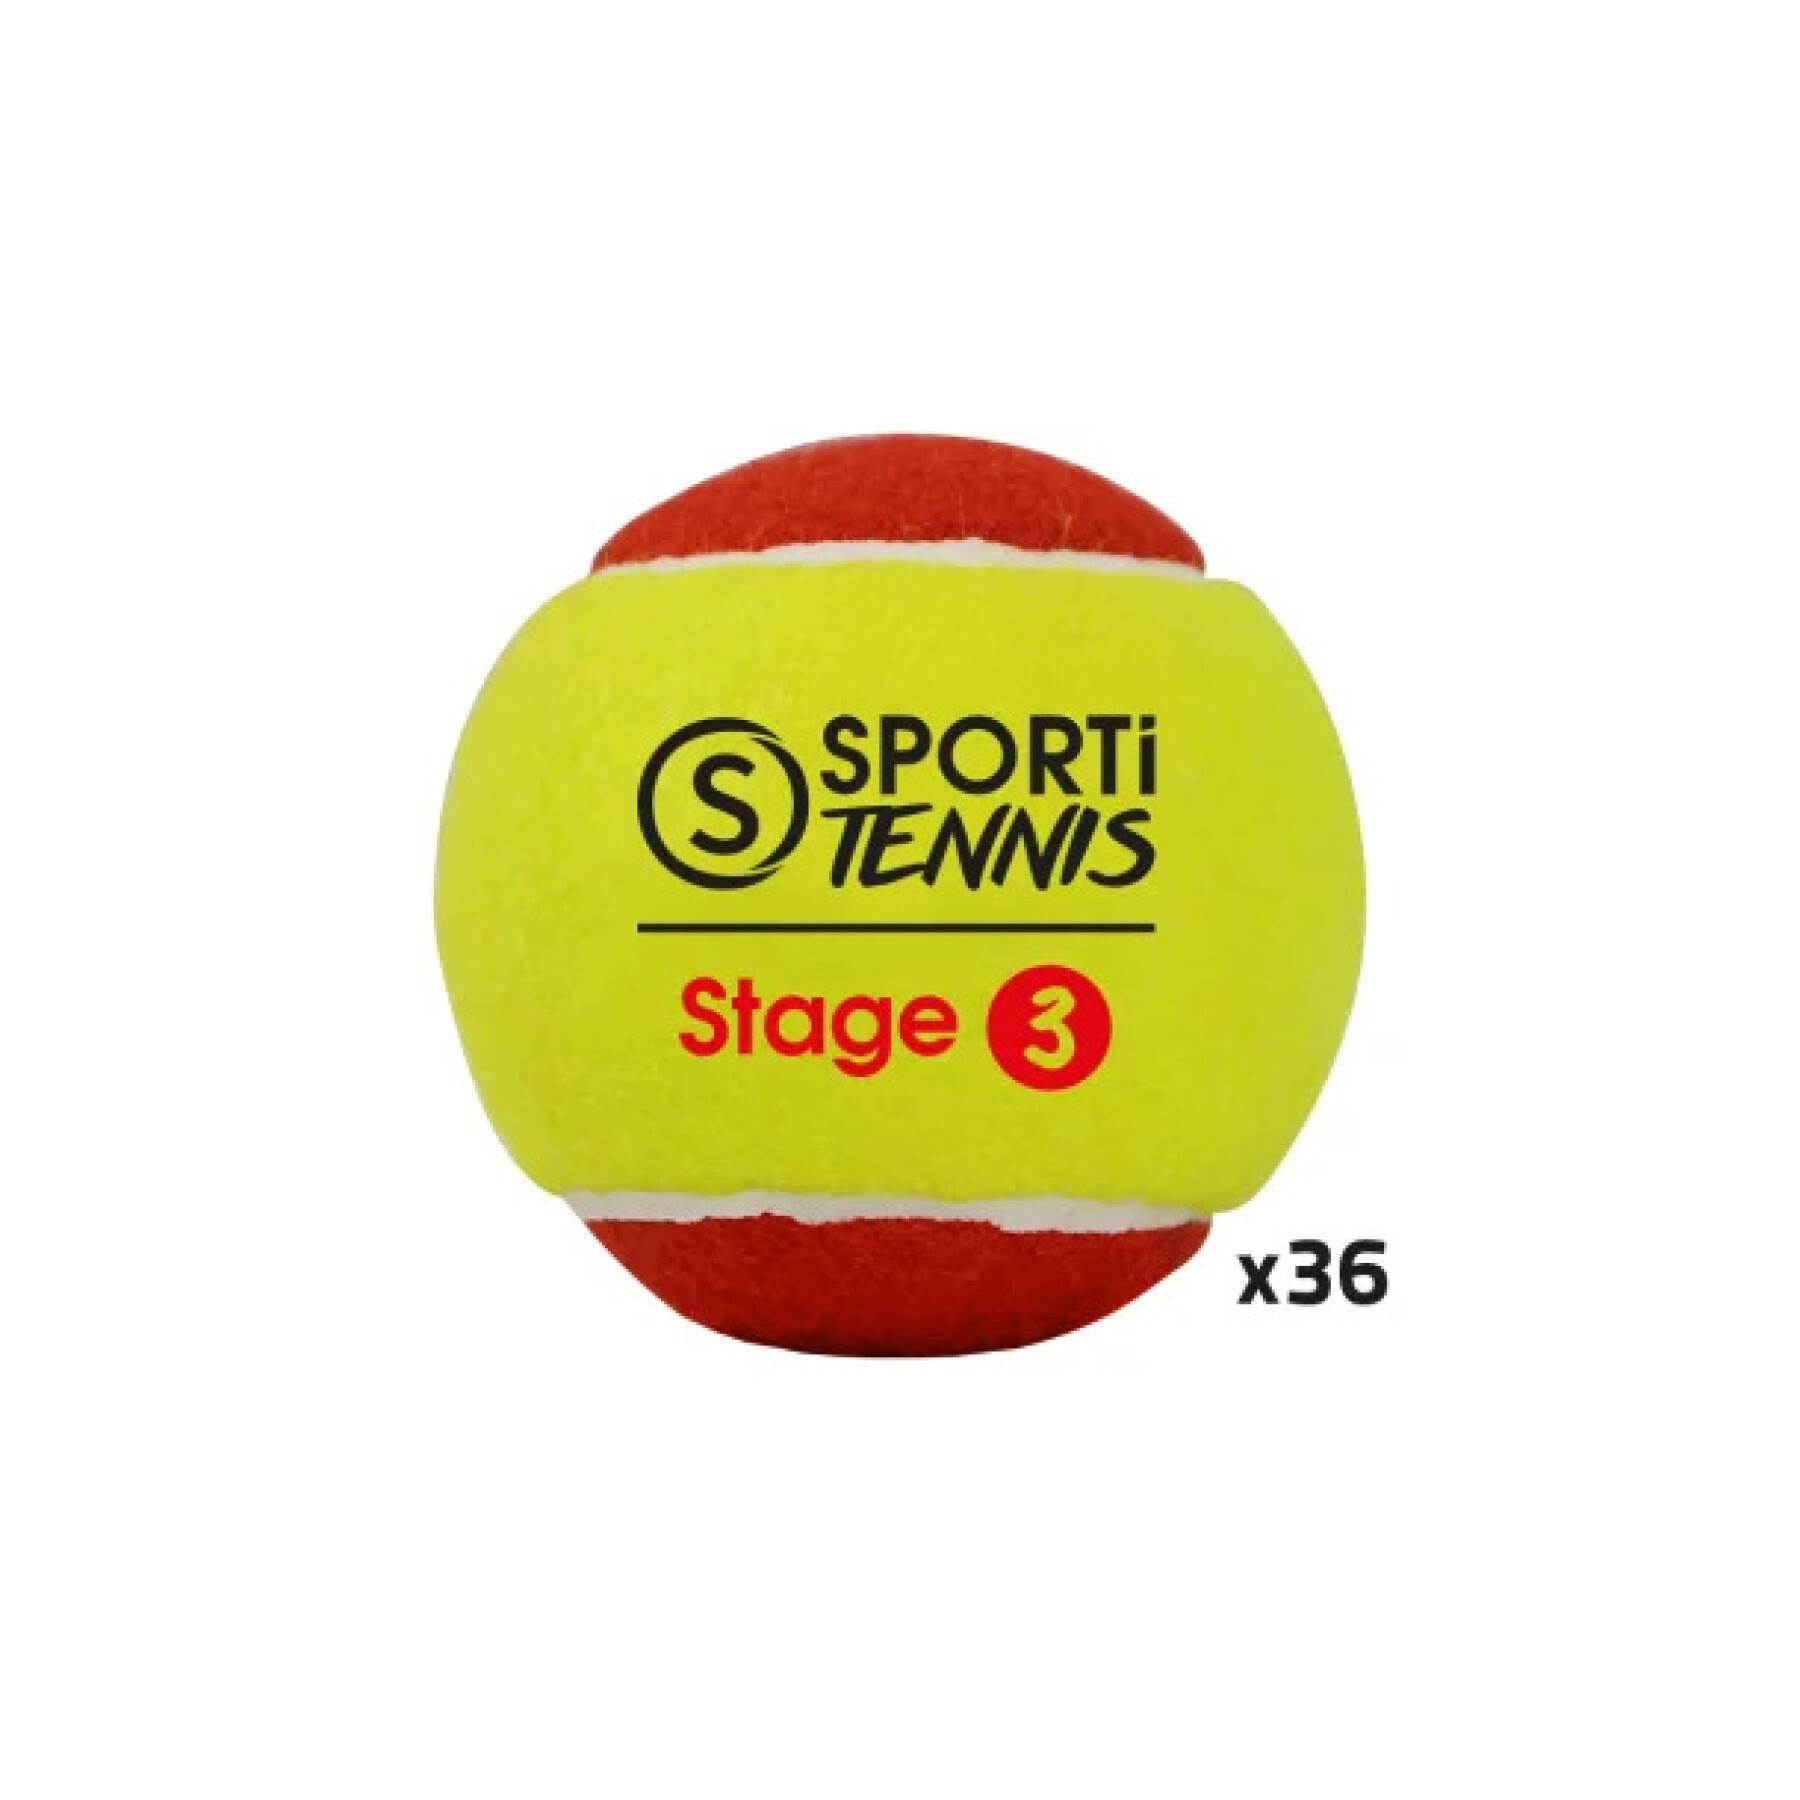 Beutel mit 36 Tennisbällen Sporti Stage 3